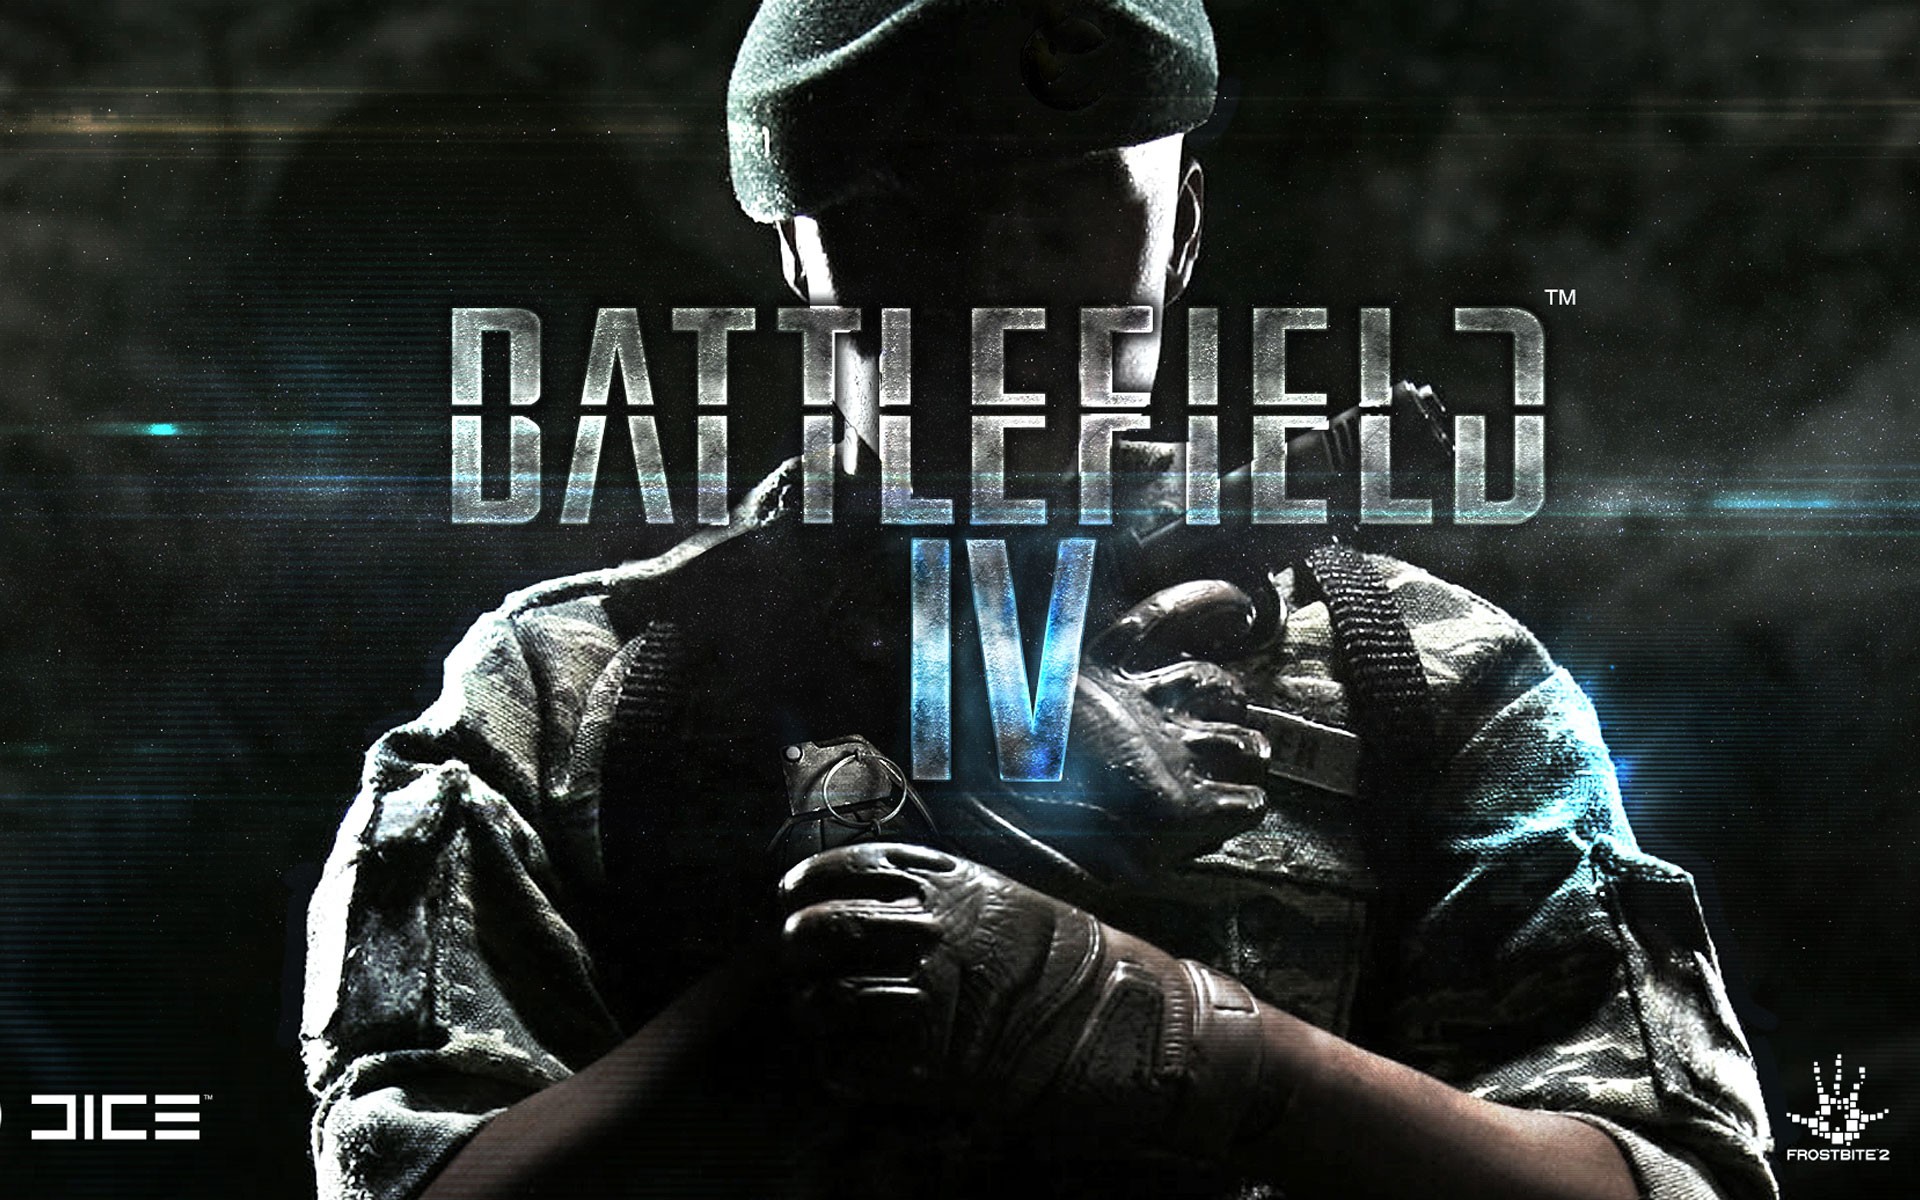 Скачать картинку Battlefield 4, Поле Битвы, Видеоигры в телефон бесплатно.